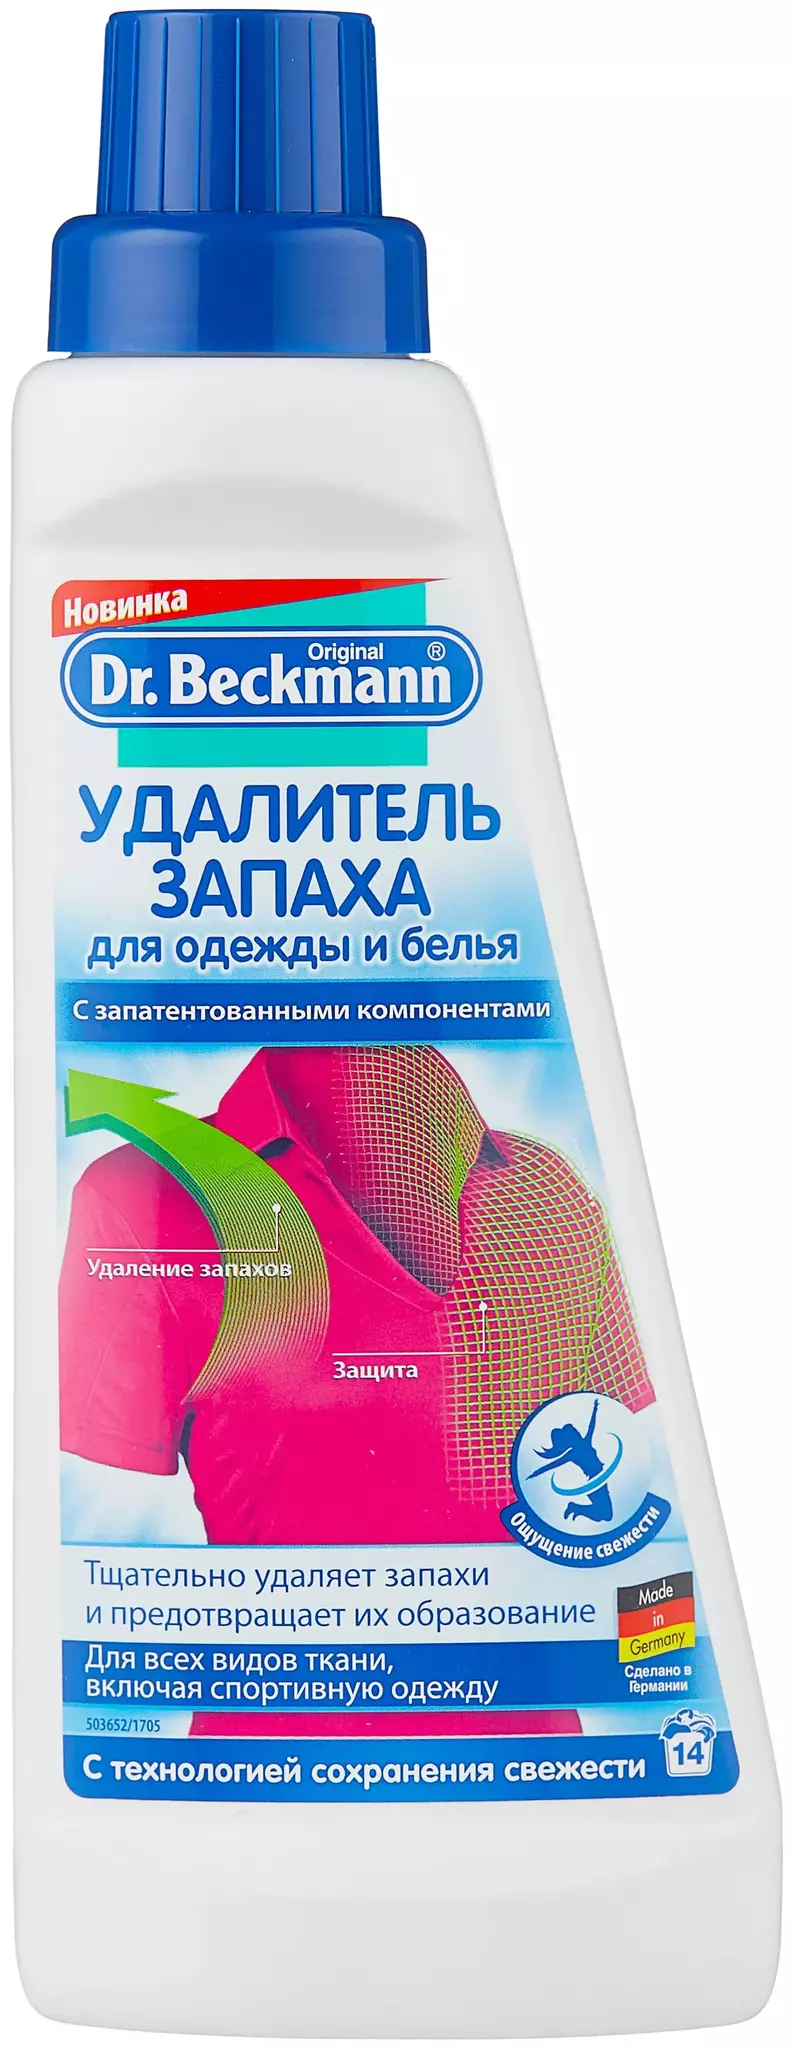 Dr.Beckmann удалитель запаха